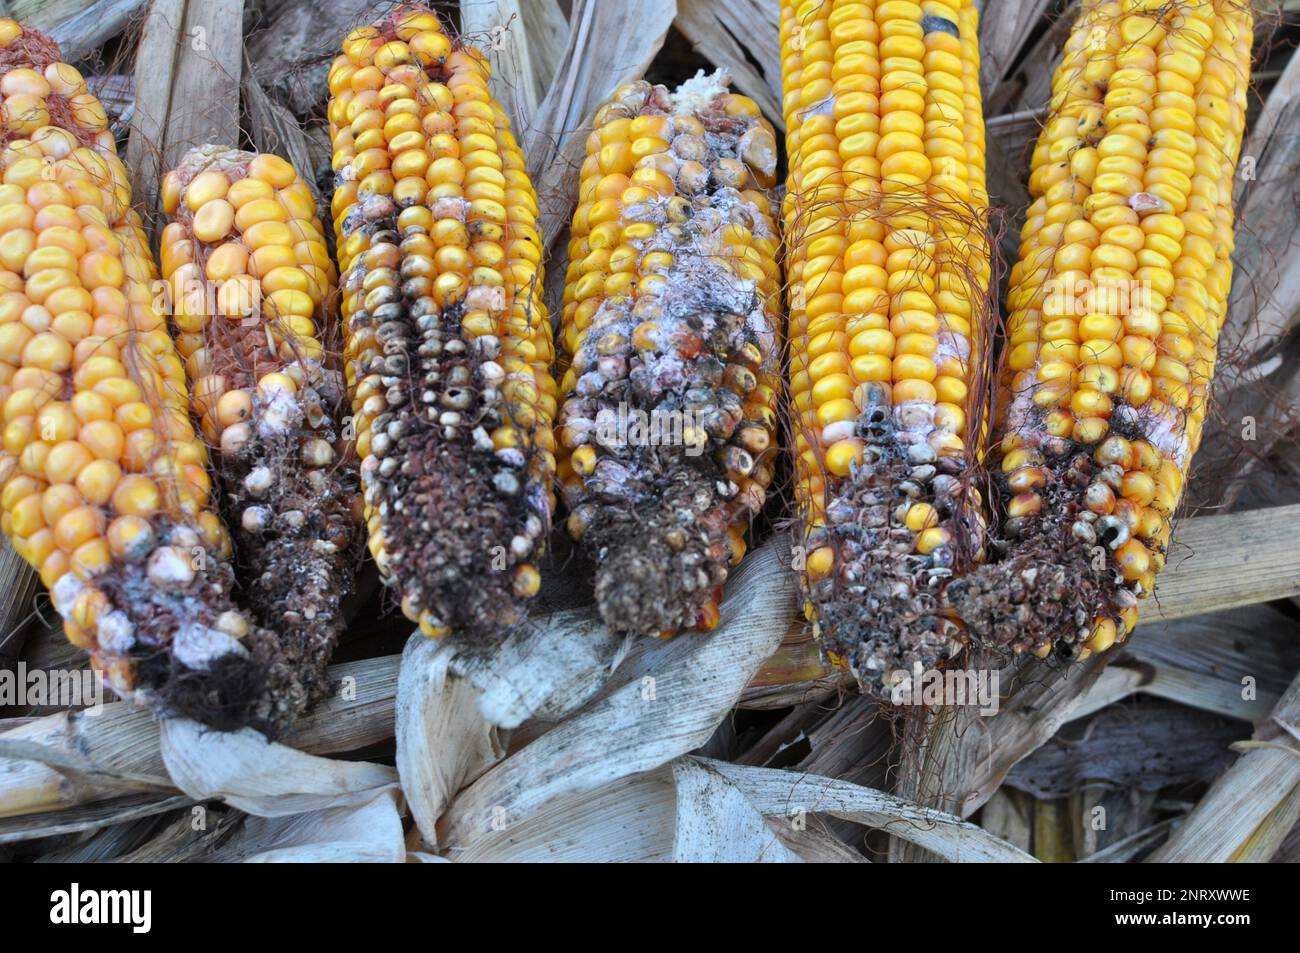 Corn cobs affected by a fungal disease - fusarium (Fusarium moniliforme) Stock Photo